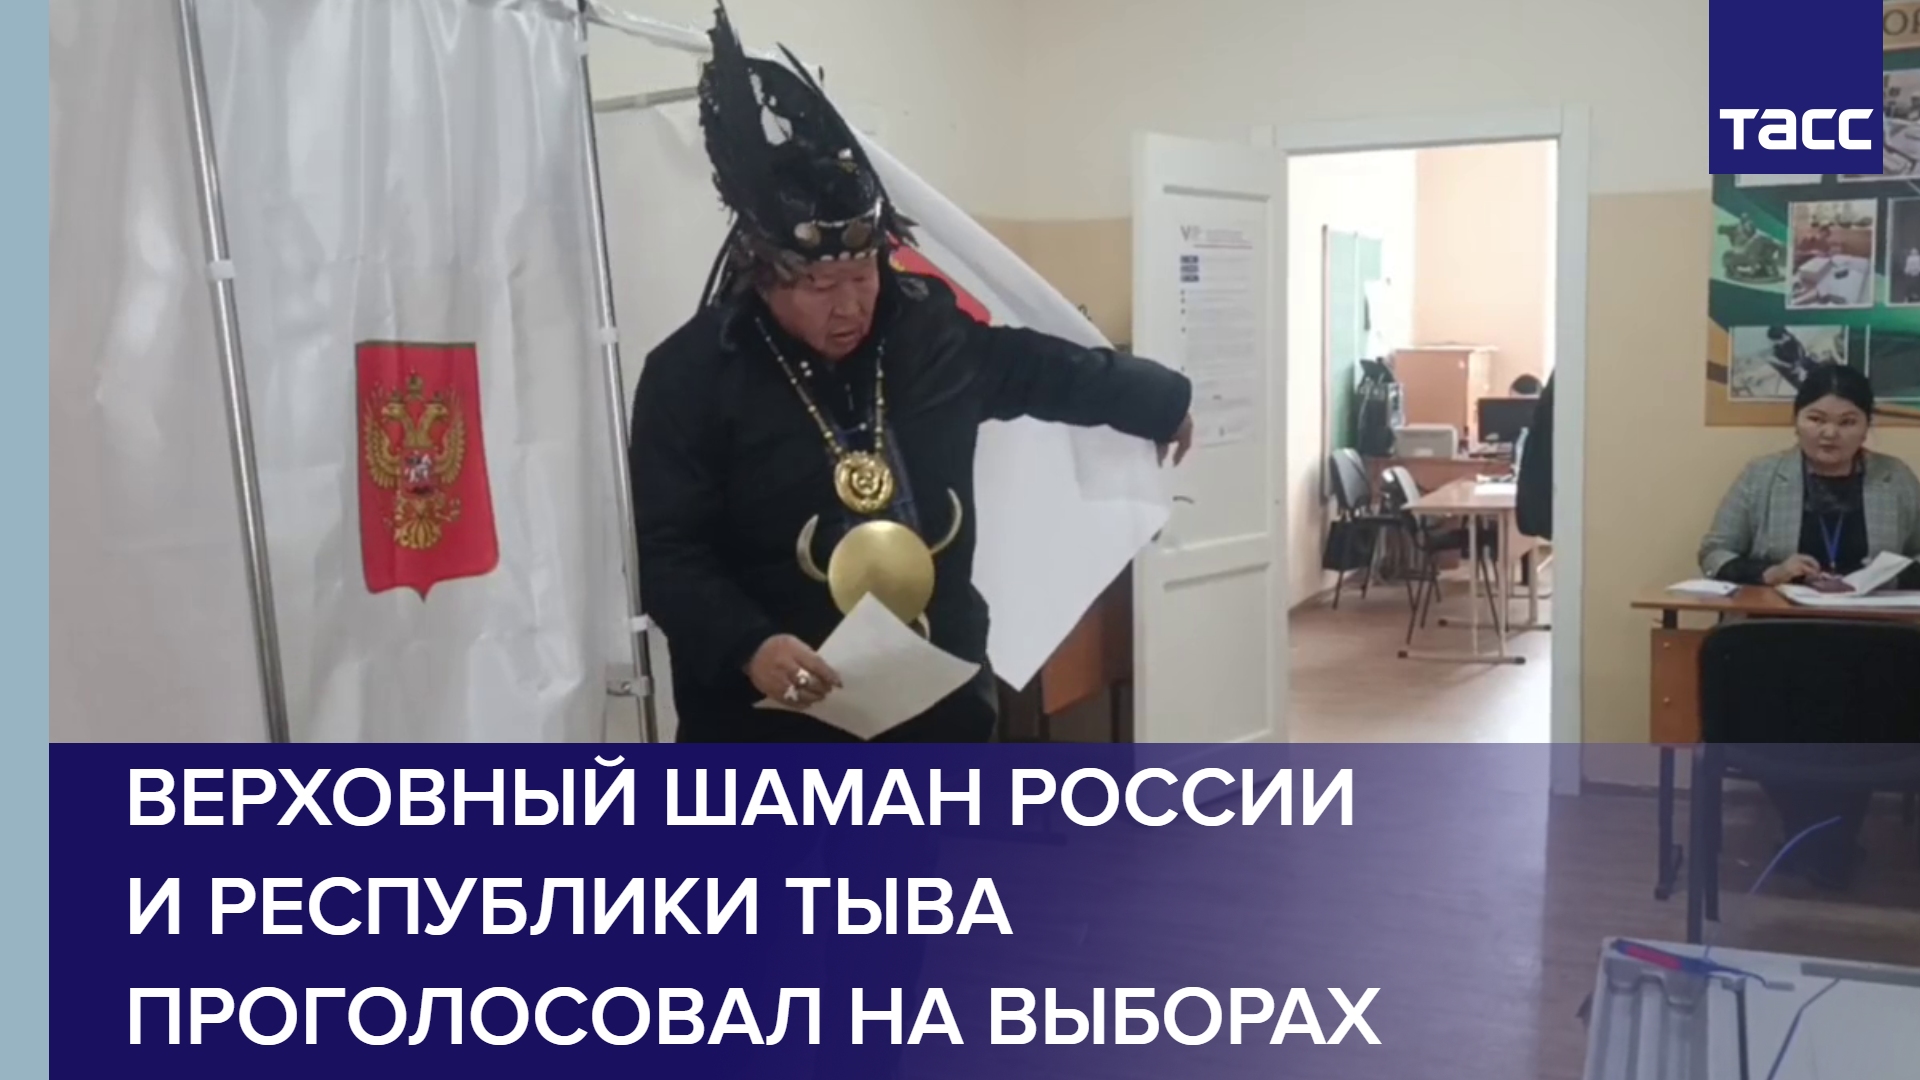 Верховный шаман России и Республики Тыва Кара-оол Допчун-оол проголосовал